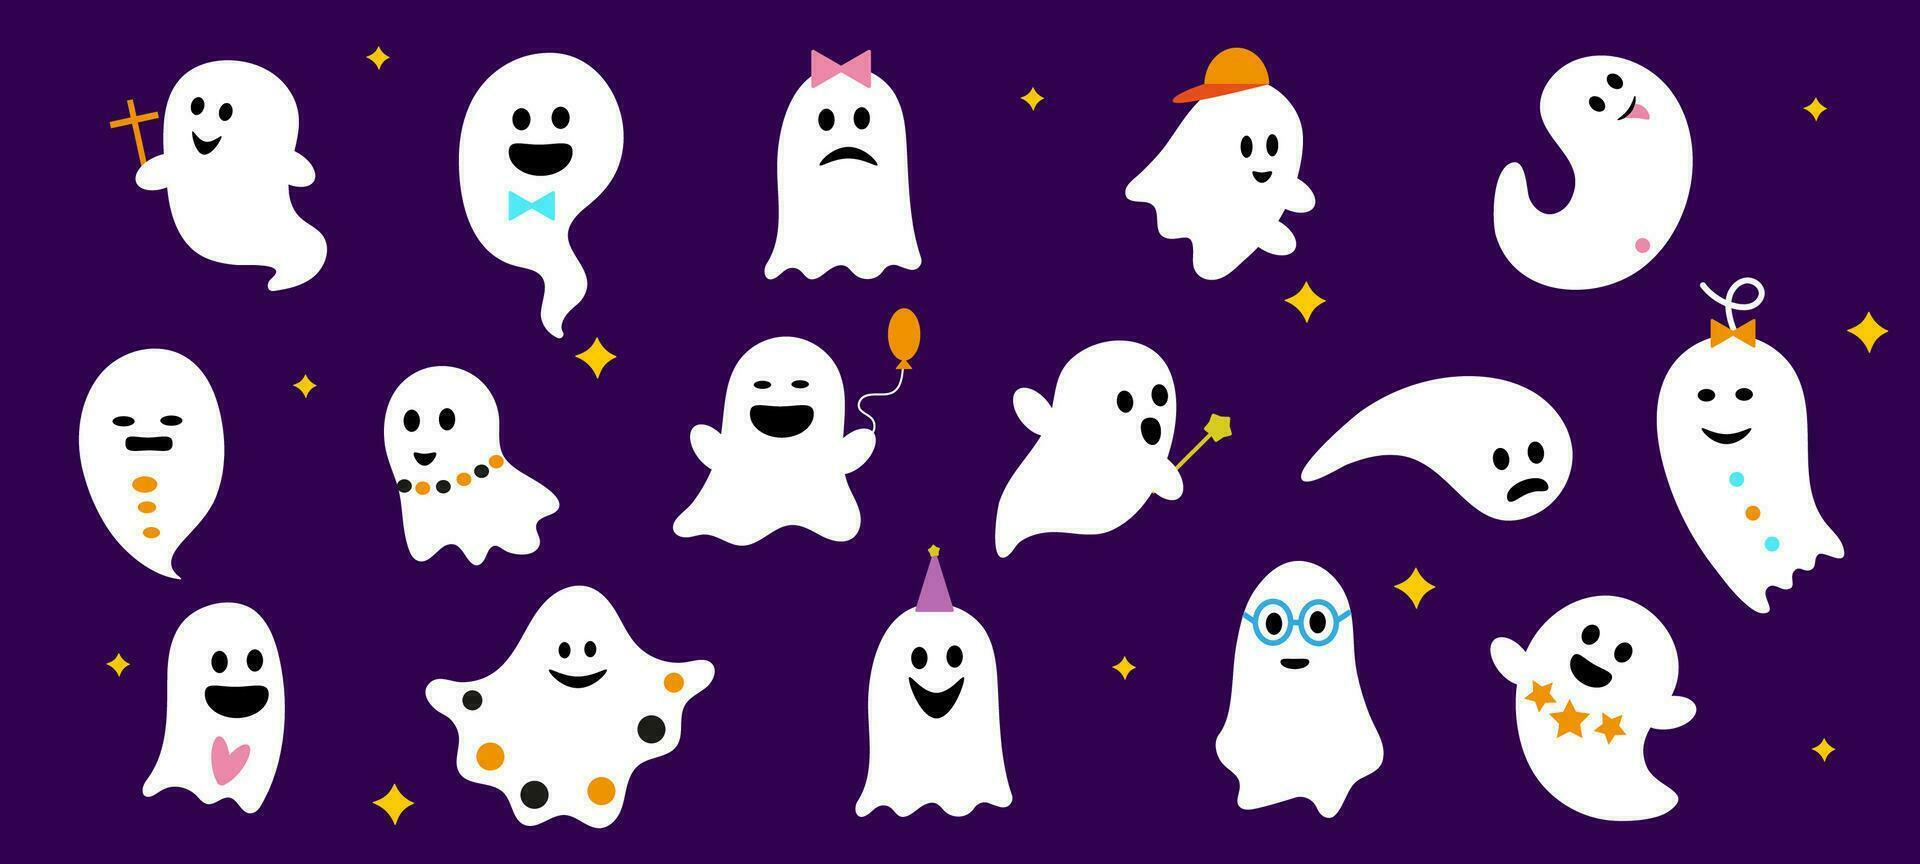 Halloween cute kawaii flying ghosts characters set vector